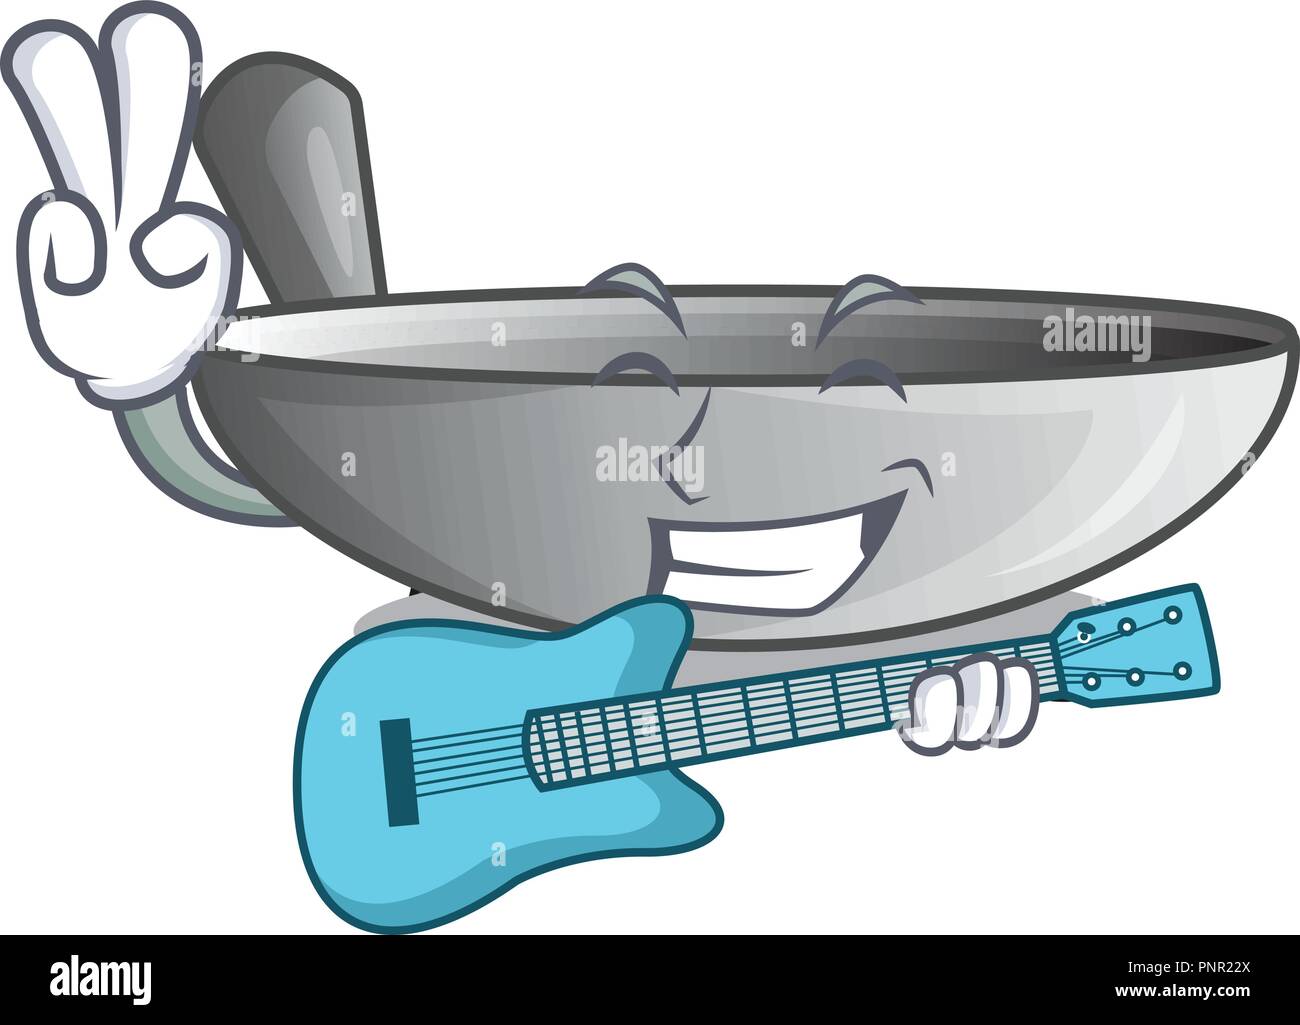 Mit Gitarre cartoon Wok auf der Küchengeräte Stock-Vektorgrafik - Alamy